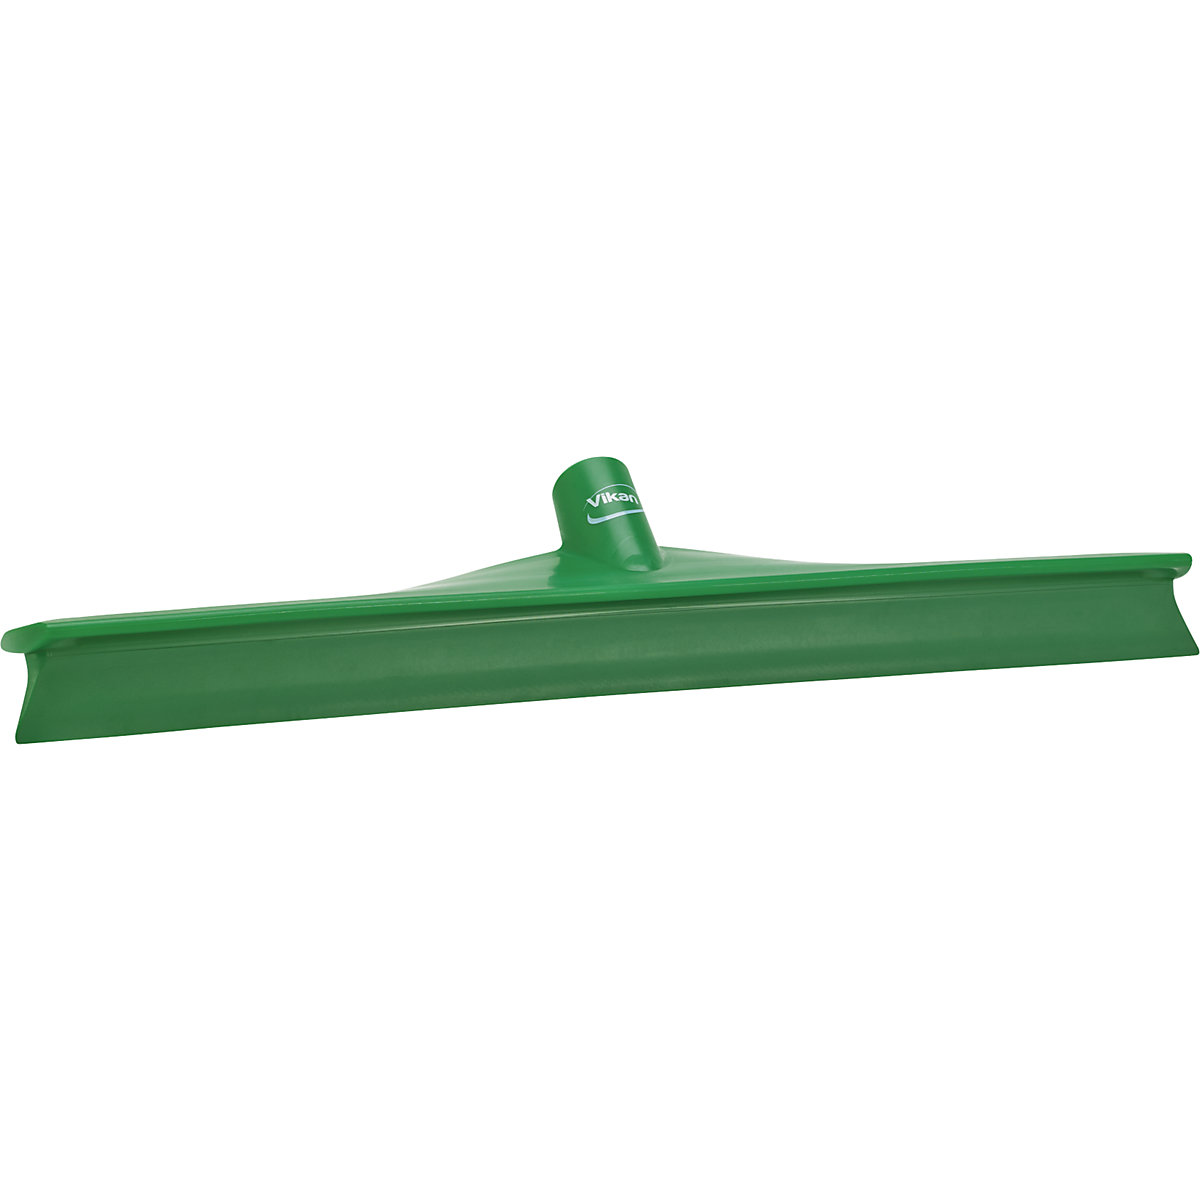 Watertrekker – Vikan, lengte 500 mm, VE = 15 stuks, groen